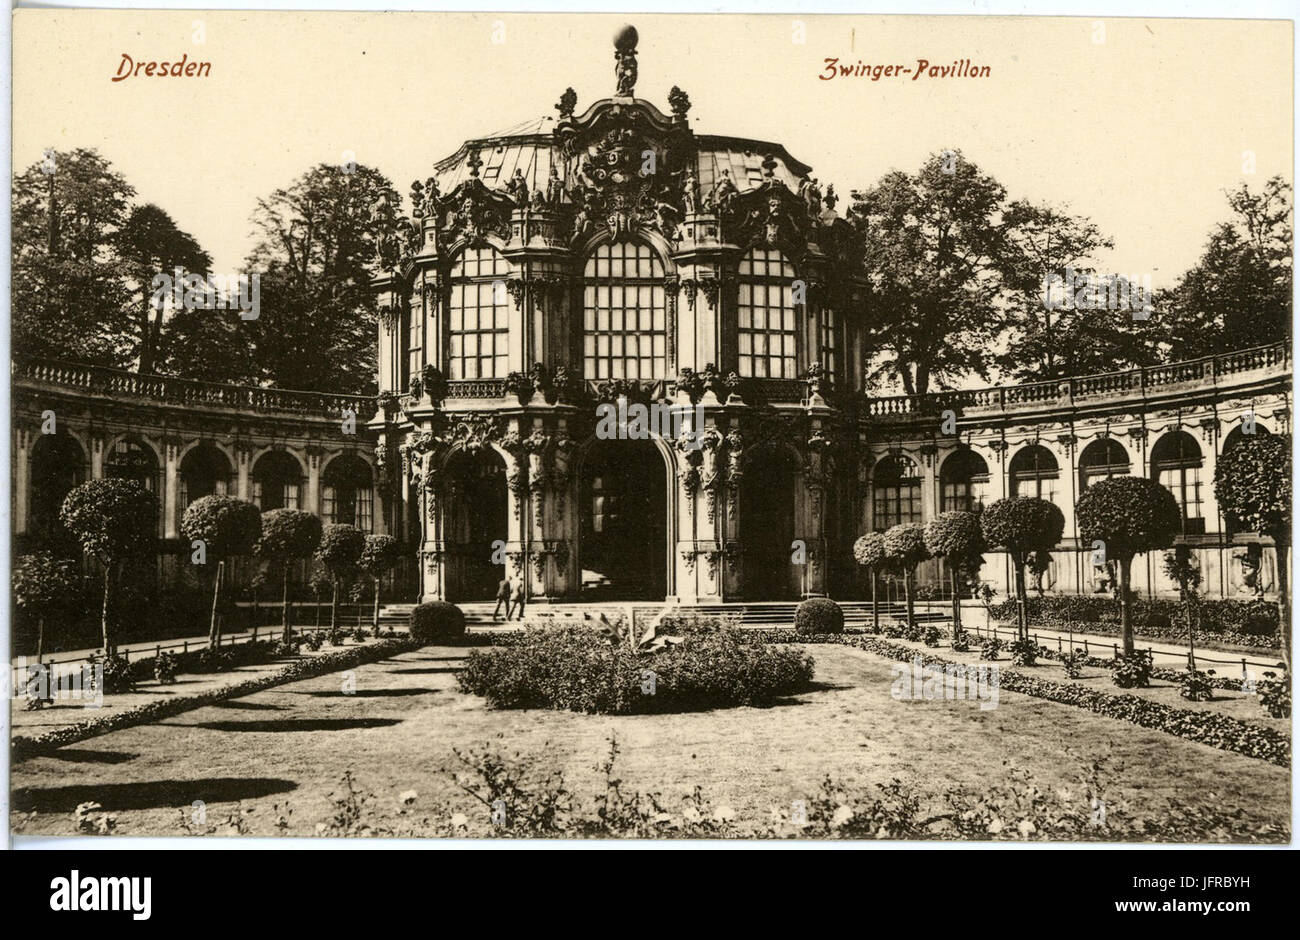 18920-Dresden-1915-Zwinger - Pavillon-Brück & Sohn Kunstverlag Stock Photo